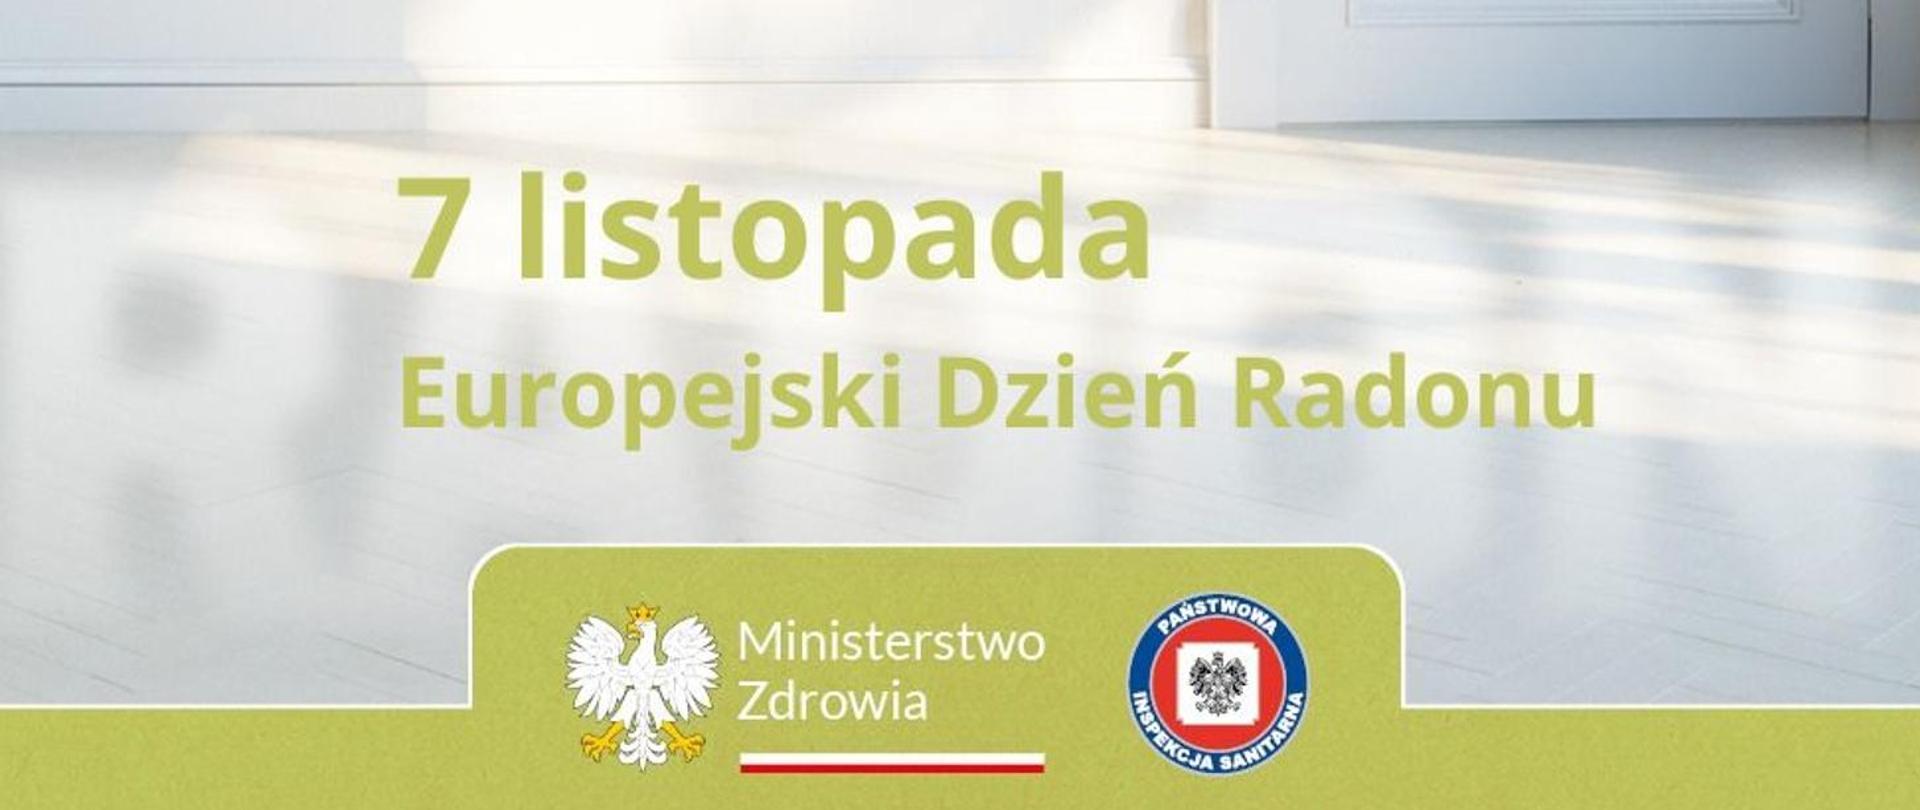 na środku zielony napis "7 listopada - Europejski Dzień Radonu". W tle zdjęcie białej podłogi z kawałkiem ściany i drzwi (również białych)
na dole na zielonym pasku logo Ministerstwa Zdrowia i Państwowej Inspekcji Sanitarnej.